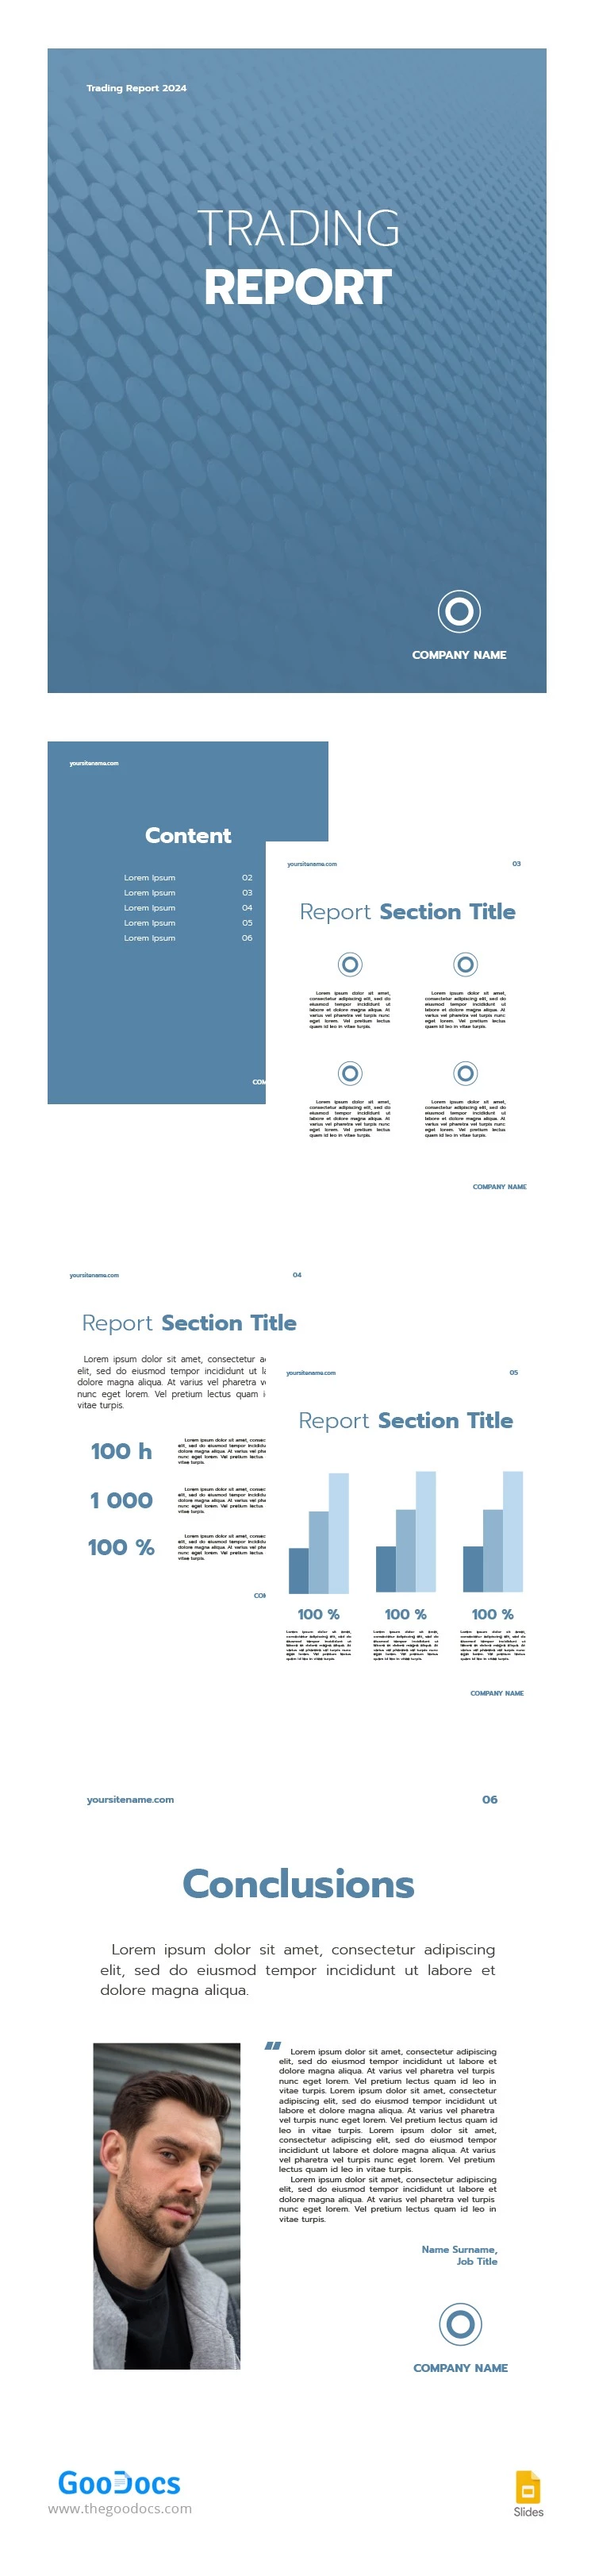 Relatório de Negociação Básico em Azul - free Google Docs Template - 10065968